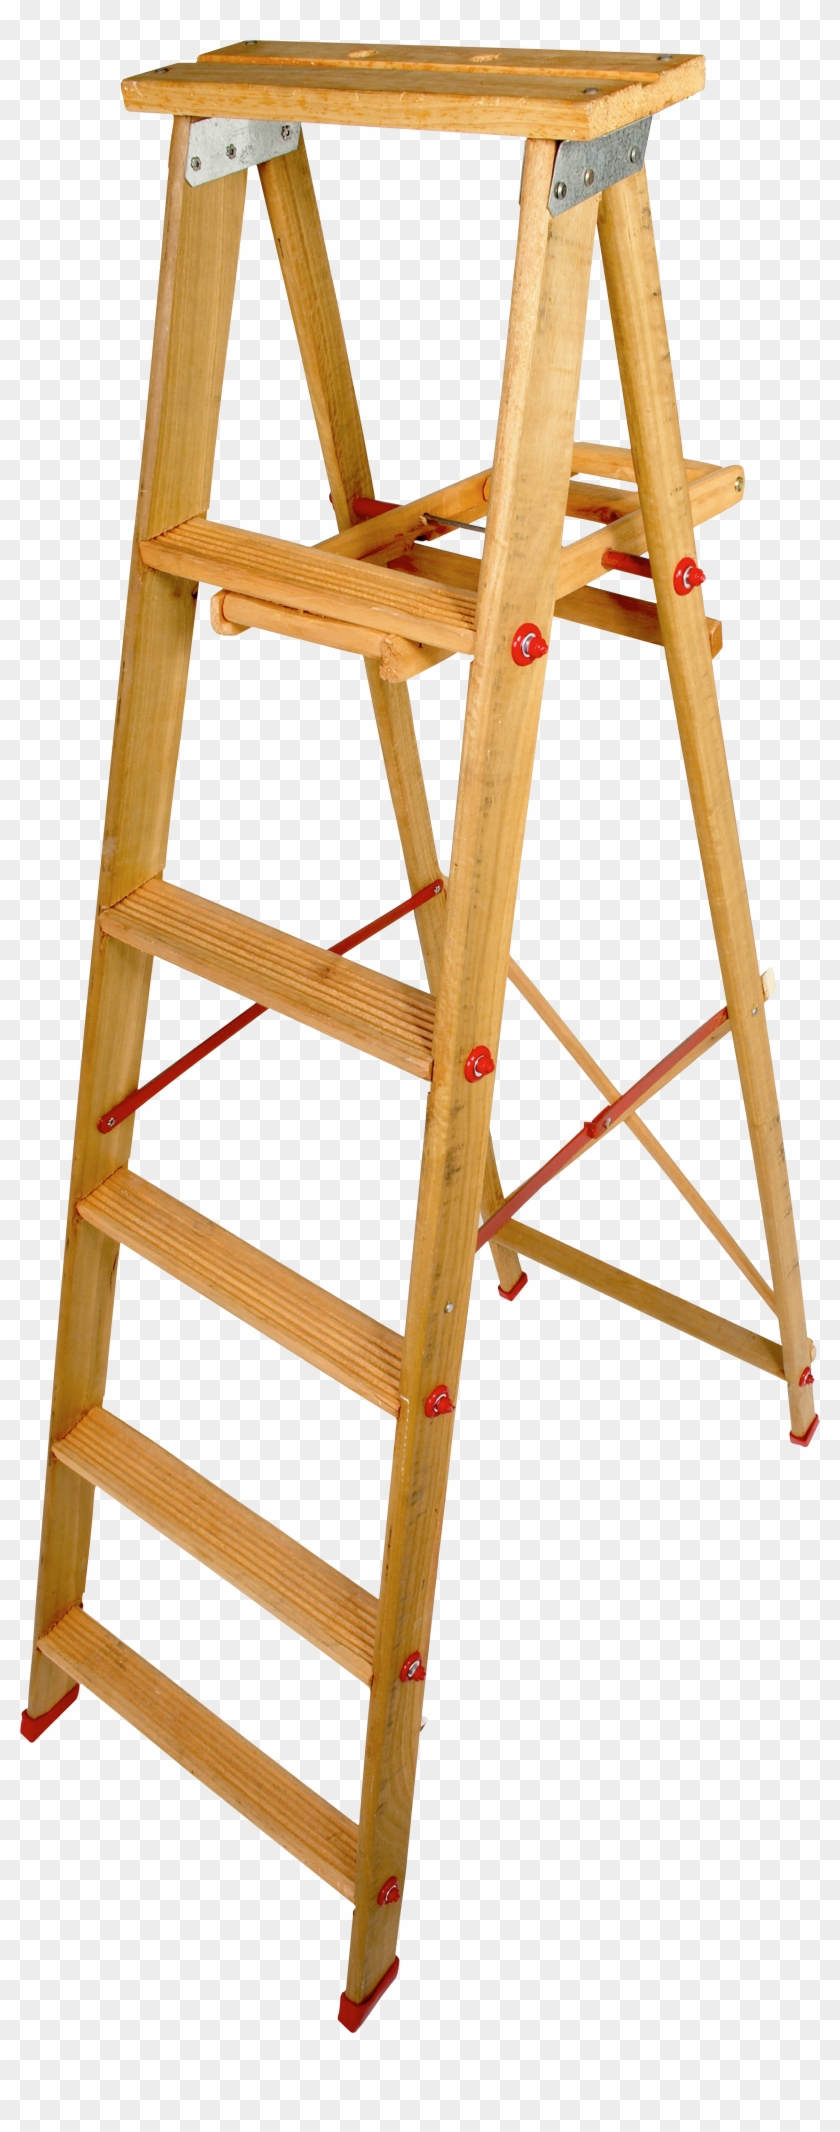 Wood Step Ladder Png - Step Ladder Transparent Background Clipart